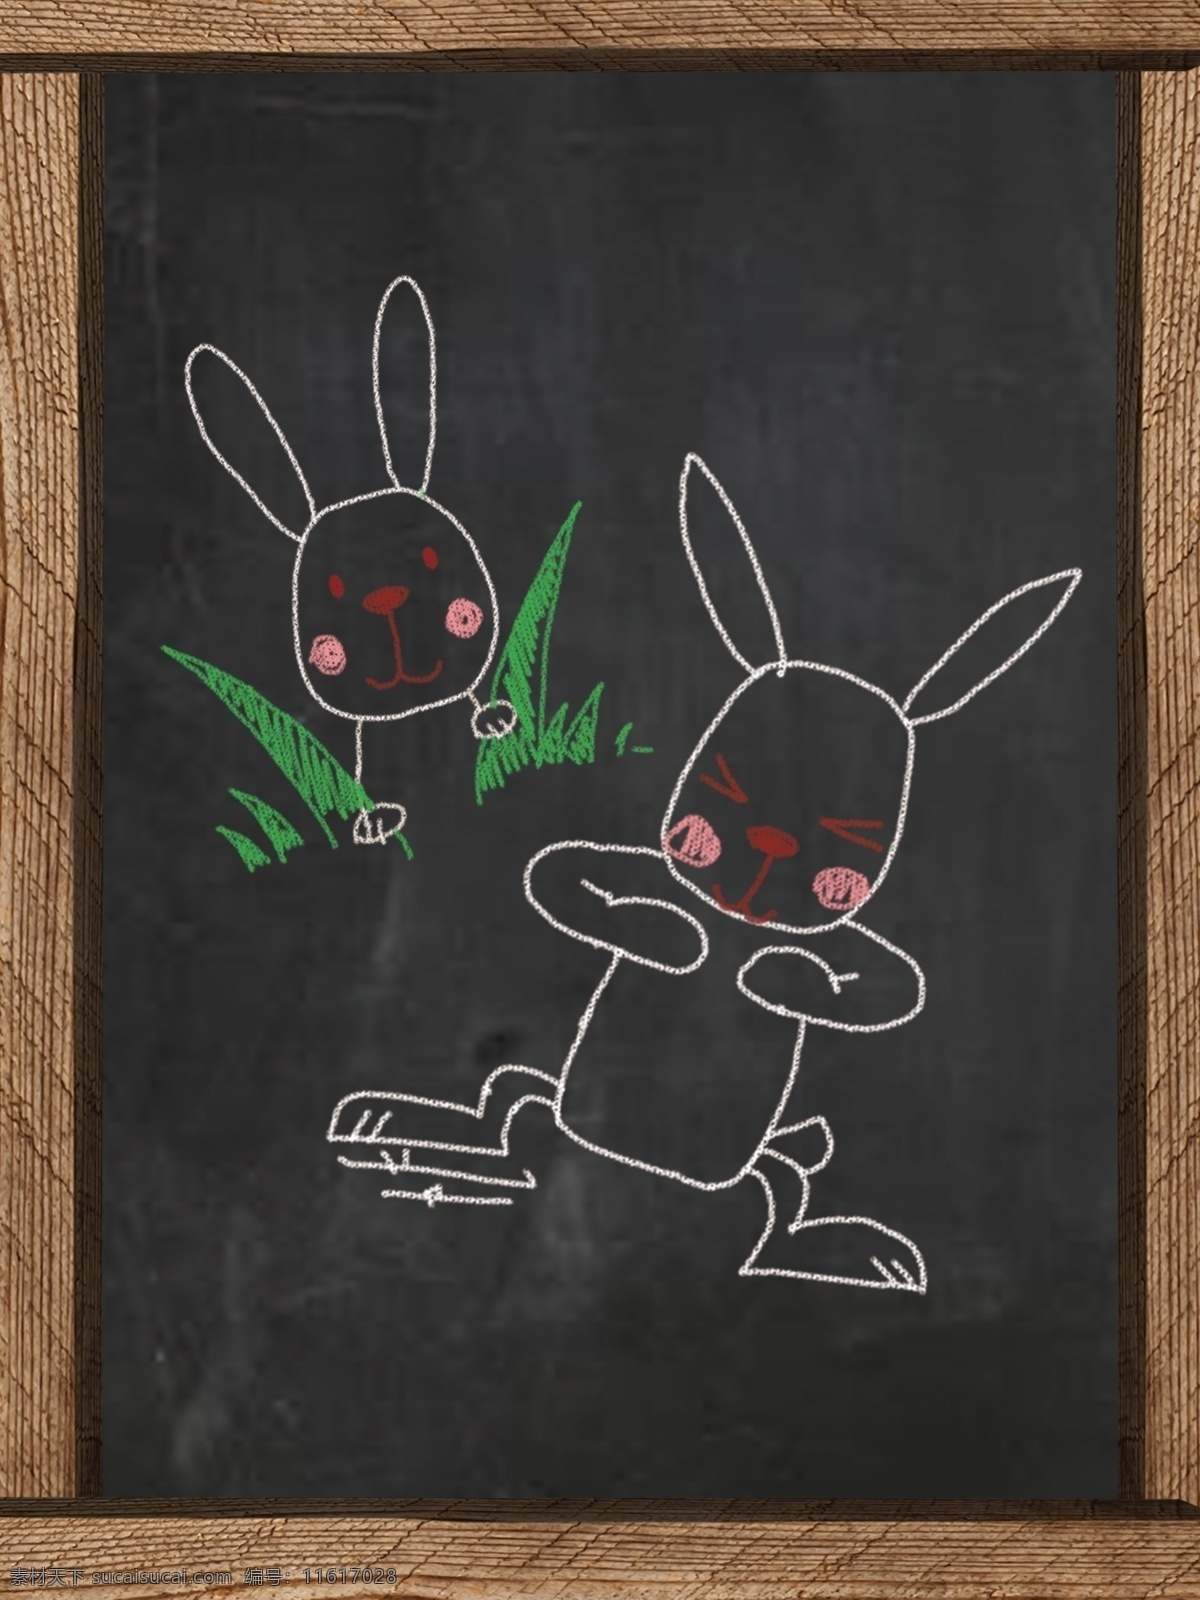 卡通小黑板 卡通 兔子 黑板 木头材质 黑色